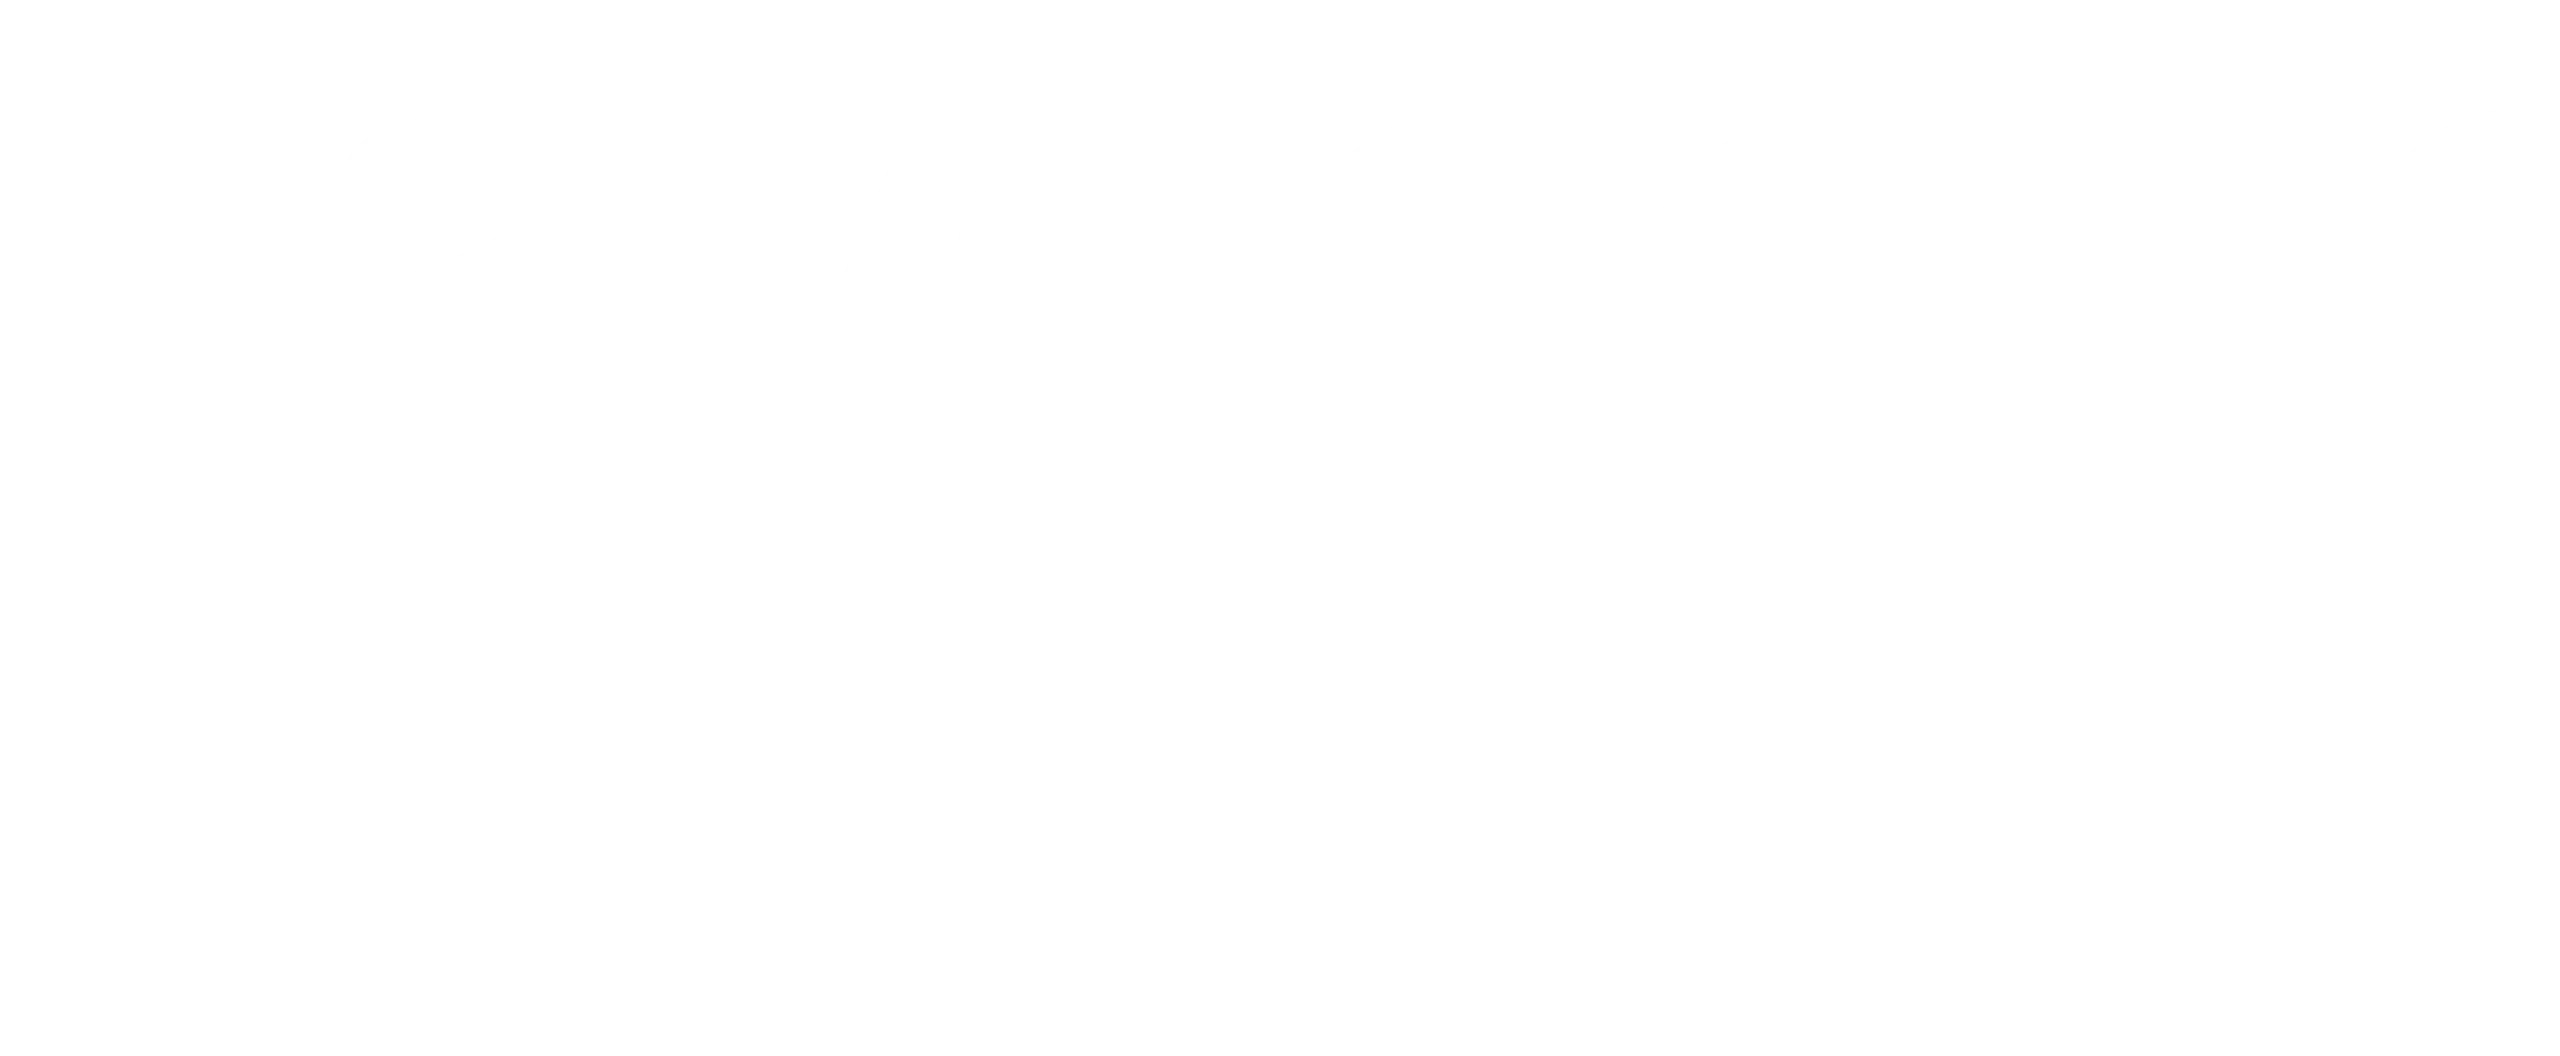 Lavender Haze typographic title